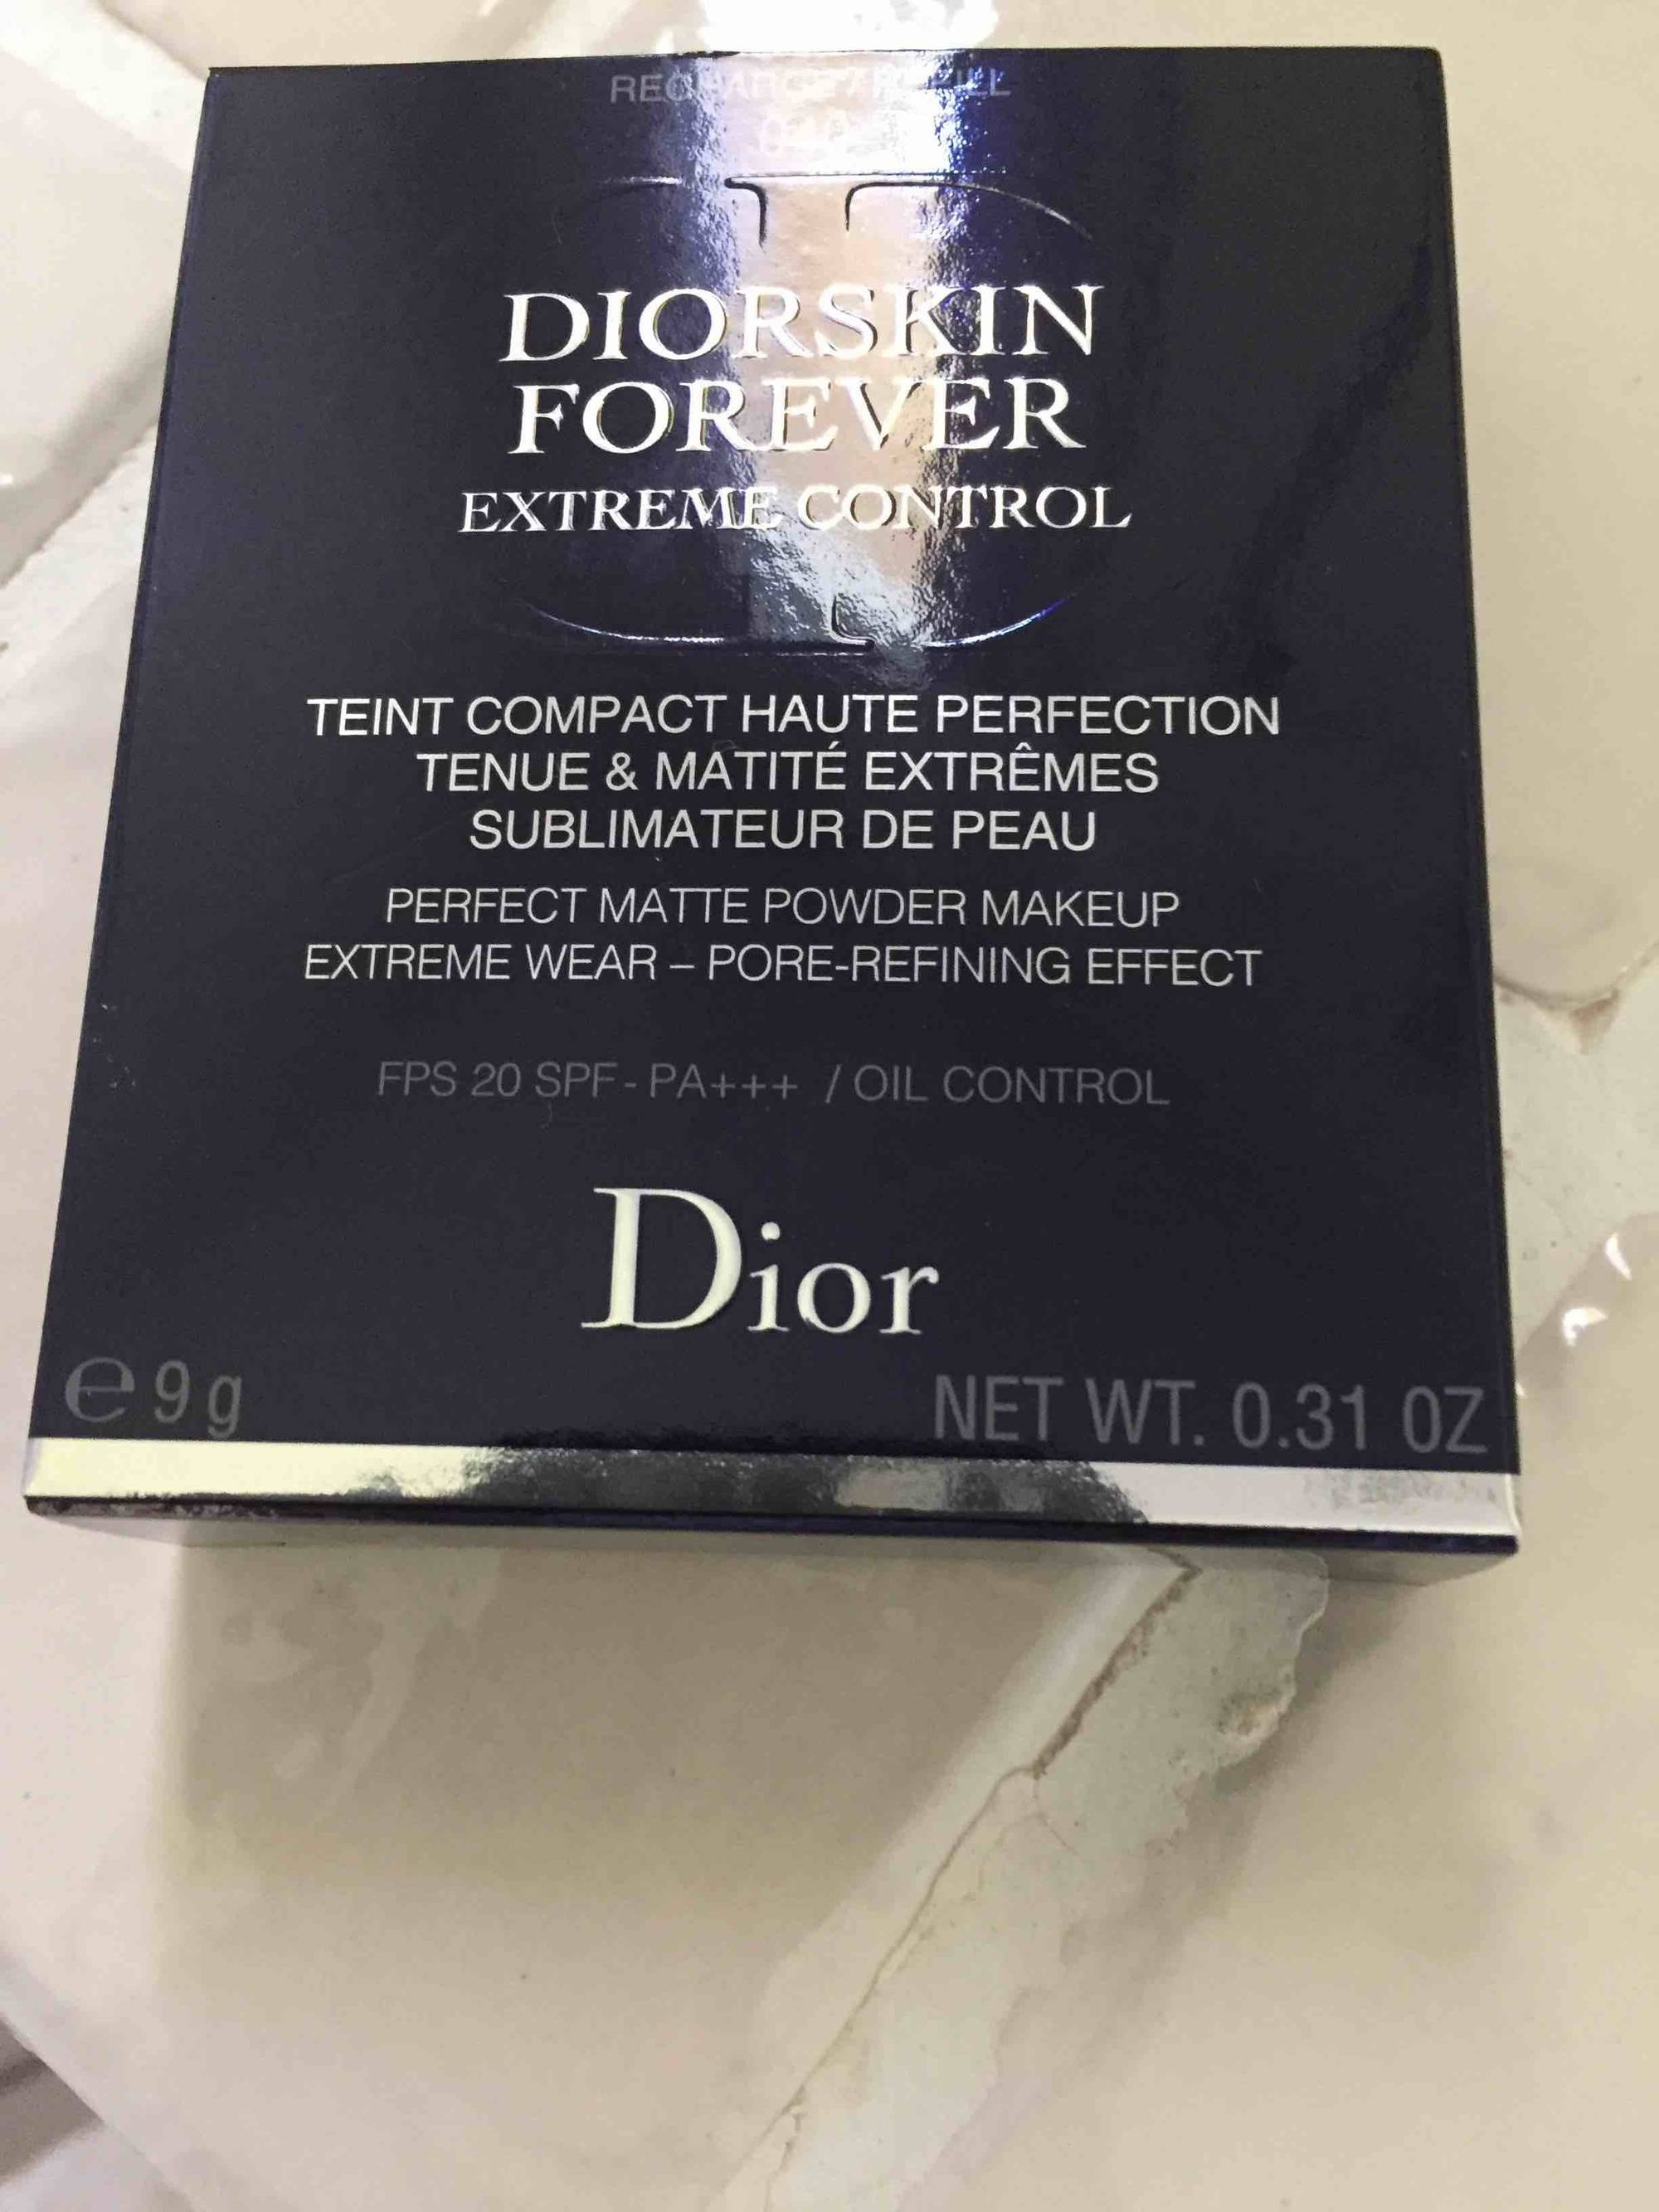 DIOR - Diorskin forever extreme control - Teint compact haute perfection, tenue & matité extrêmes sublimateur de peau